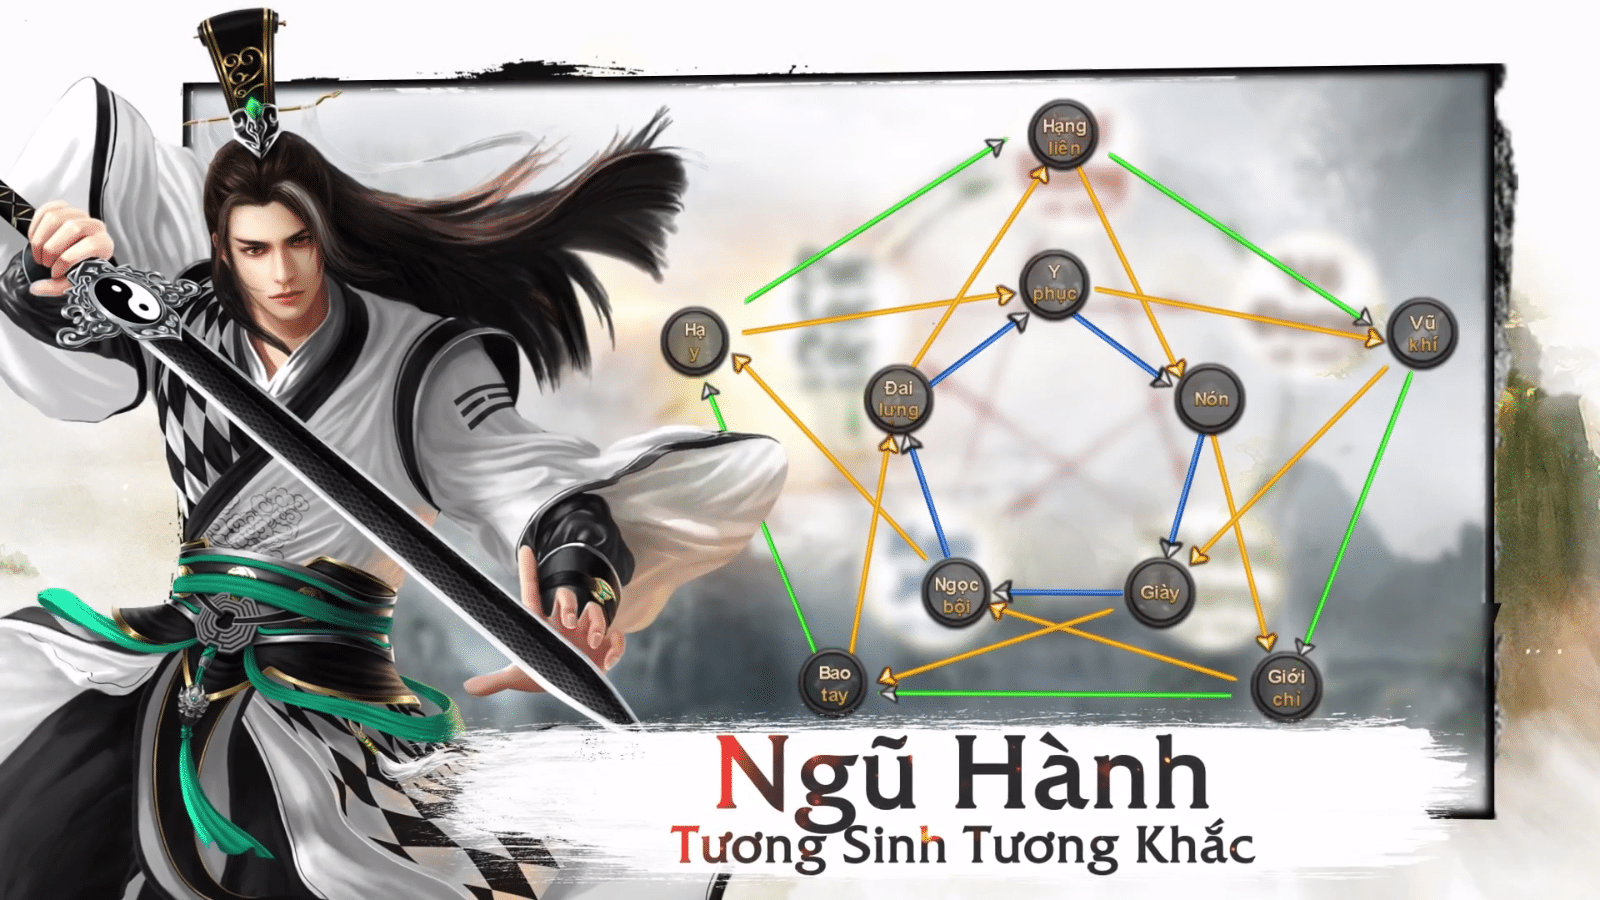 2game-webgame-cuu-am-truyen-ky-dac-sac-1.png (1600×900)